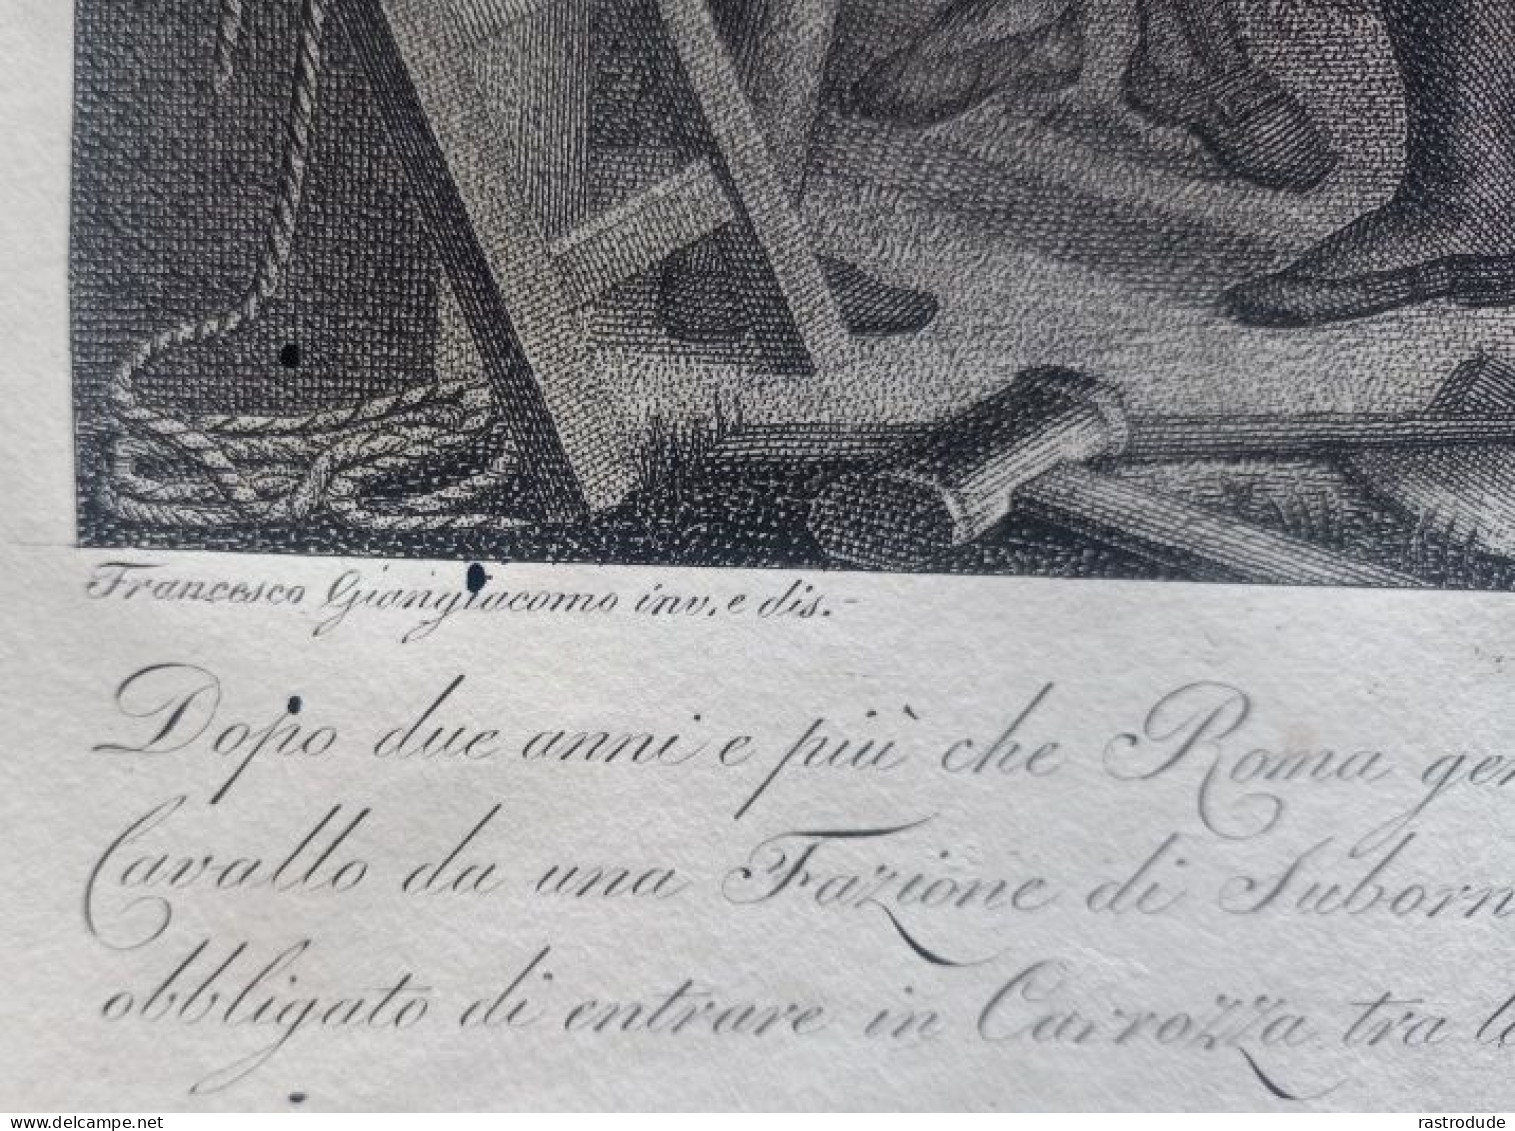 1815 - 1820 INCISIONE GIUSEPPE CALENDI (1761 - 1831) - PAPA PIO VII COSTRETTO A PARTIRE PER LA FRANCIA SOTTO LA SCORTA - Stampe & Incisioni